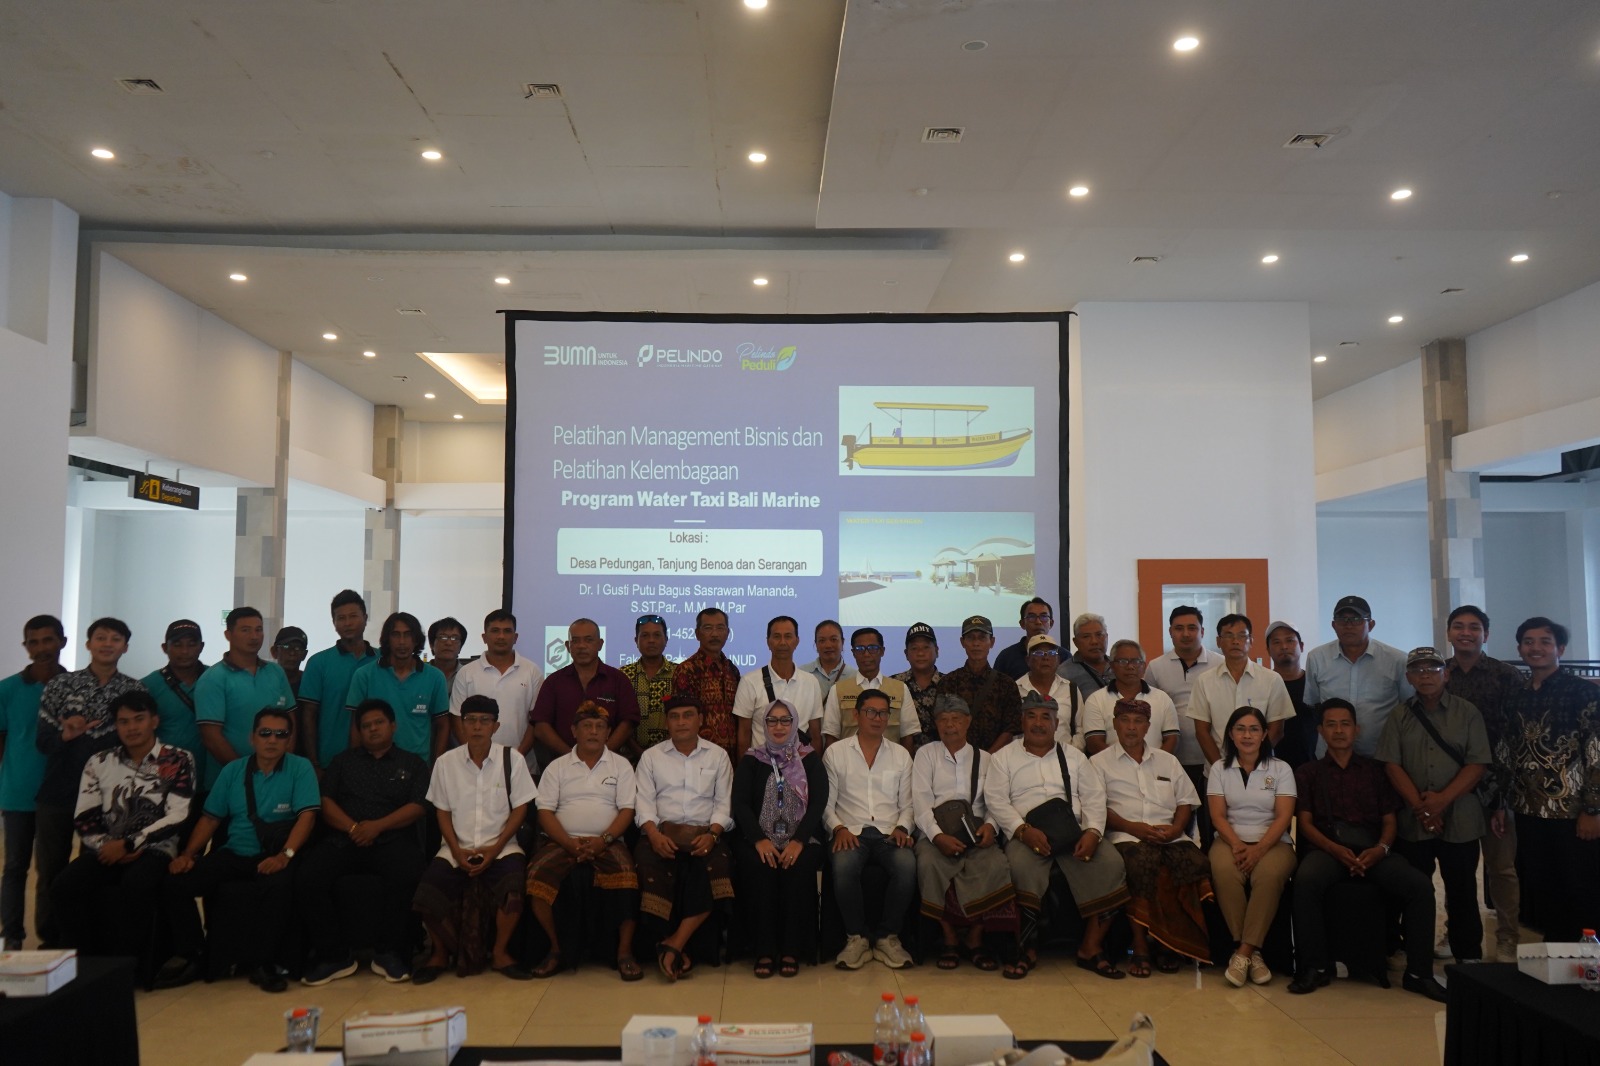 Pelatihan Manajemen Bisnis dan kelembagaan bagi nelayan, UMKM, tour guide, dan Stakeholders dari Desa Adat Tanjung Benoa, Desa Adat Serangan dan Desa Adat Pedungan.